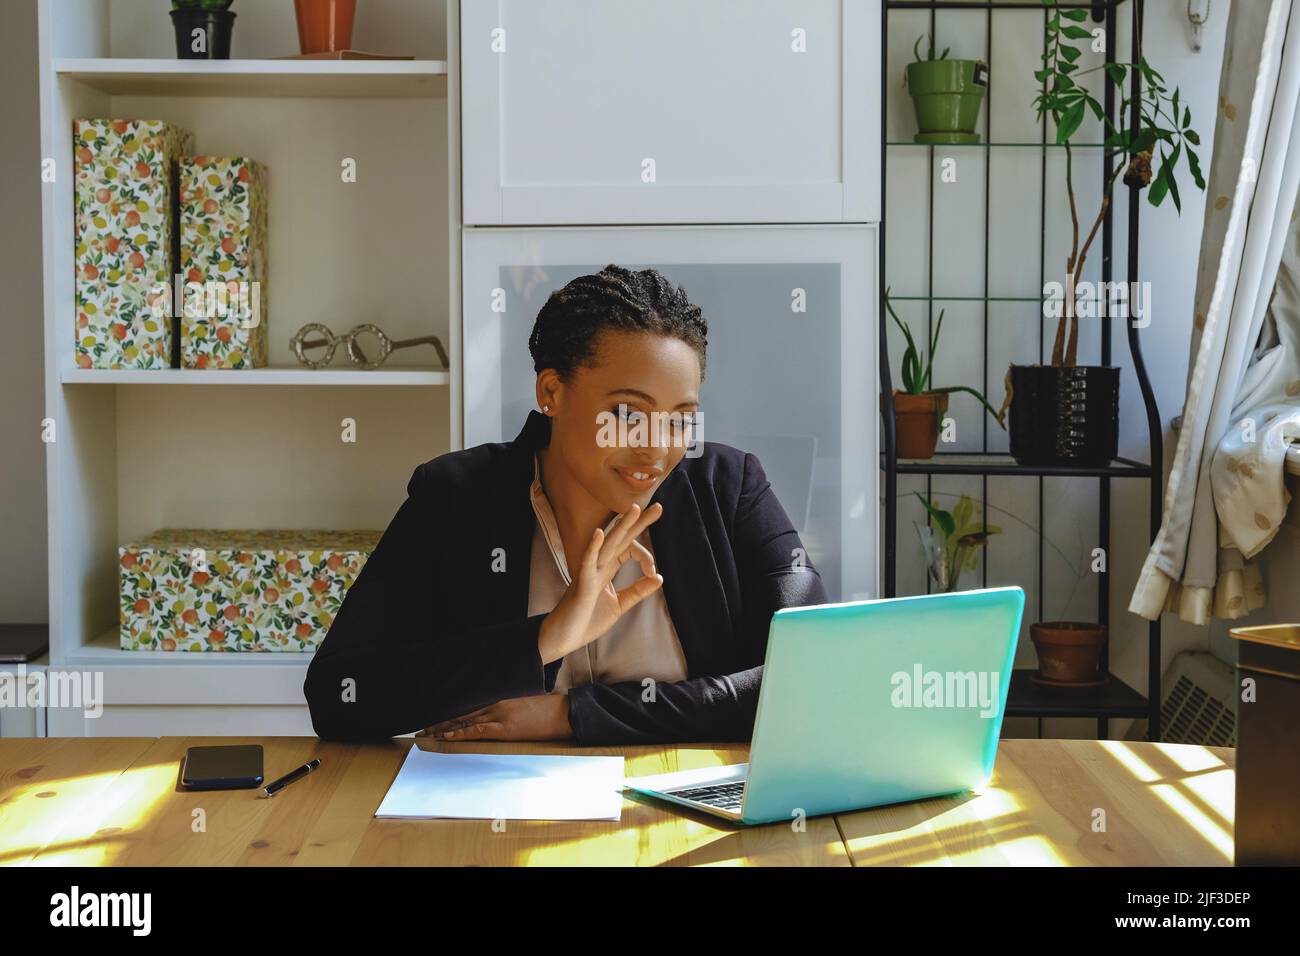 Lächelnd Junge Erwachsene Unternehmer freiberufliche schwarze Frau Kleinunternehmer auf Videoanruf zeigt ok Zeichen mit Laptop arbeiten im Home Office aufgenommen Stockfoto